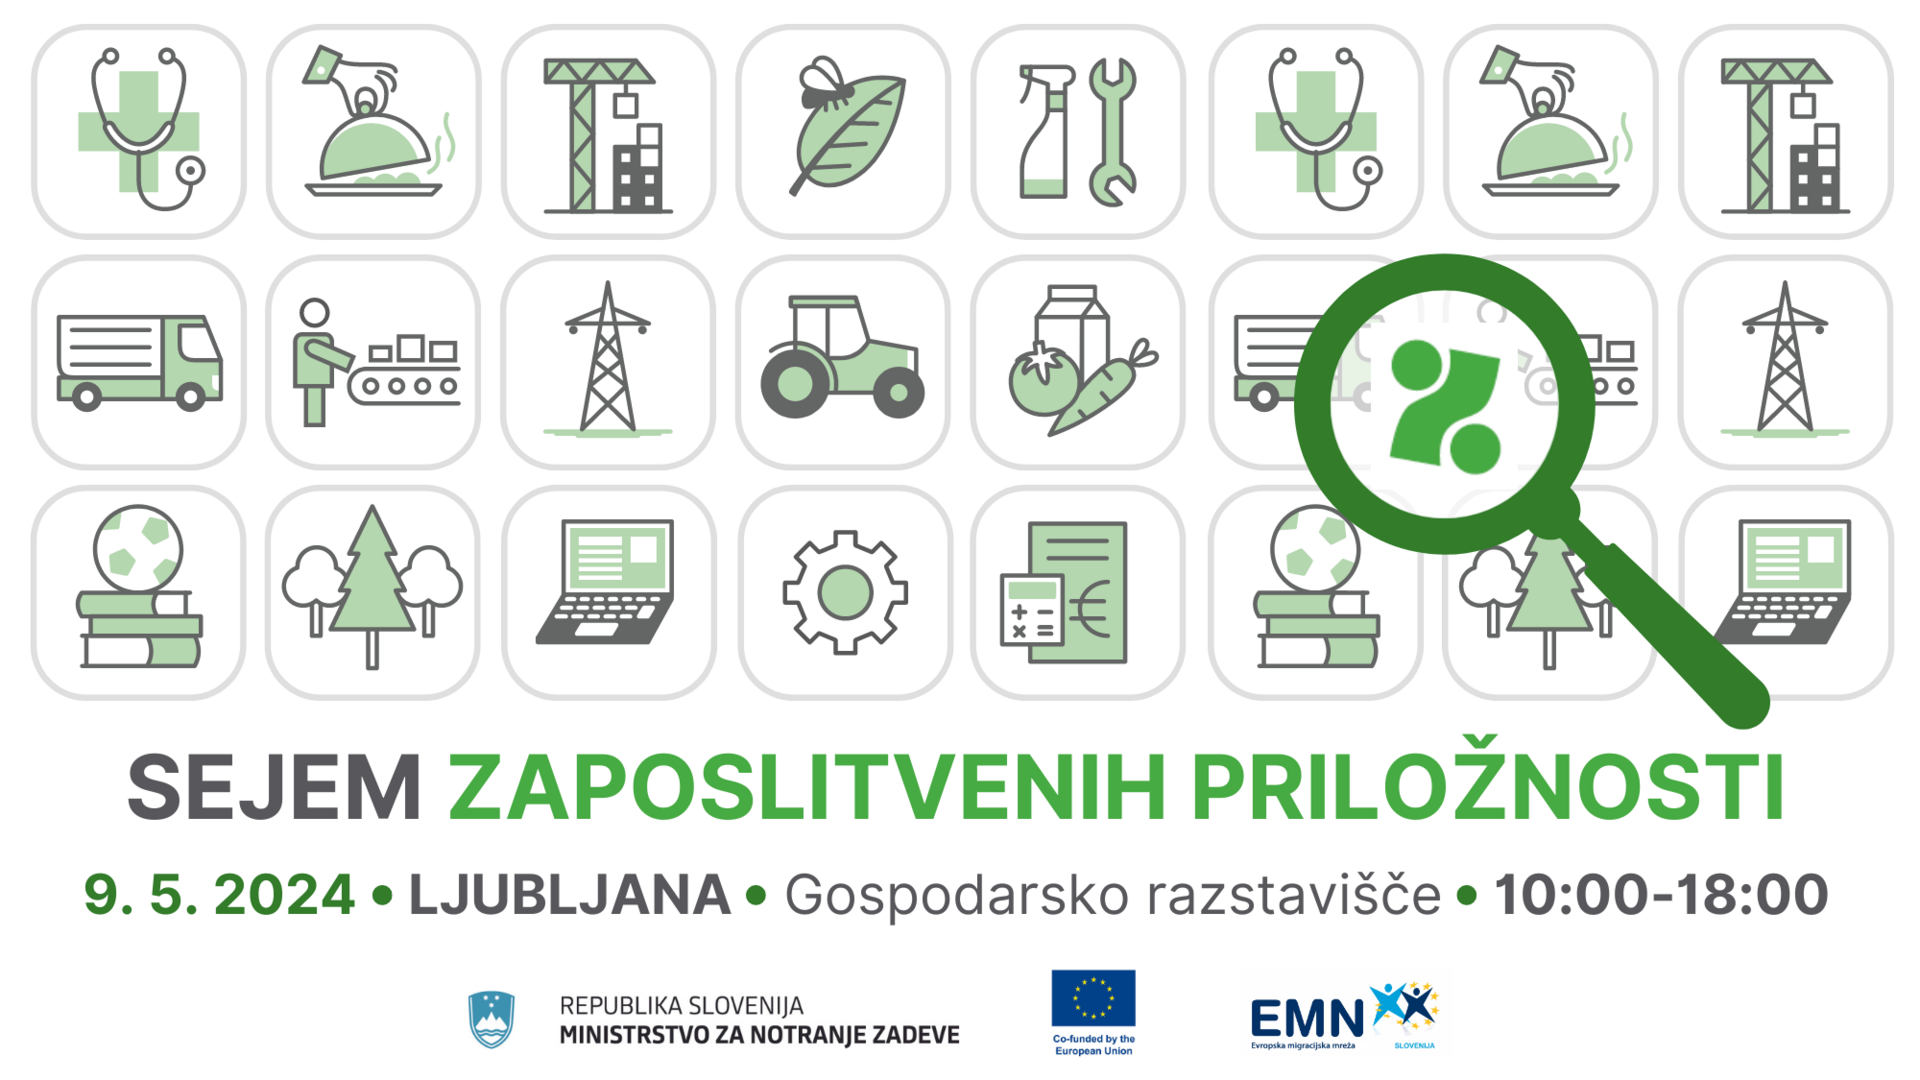 Sejem zaposlitvenih priložnosti, 9. maja 2024, Ljubljana, Gospodarsko razstavišče, od 10. do 18. ure